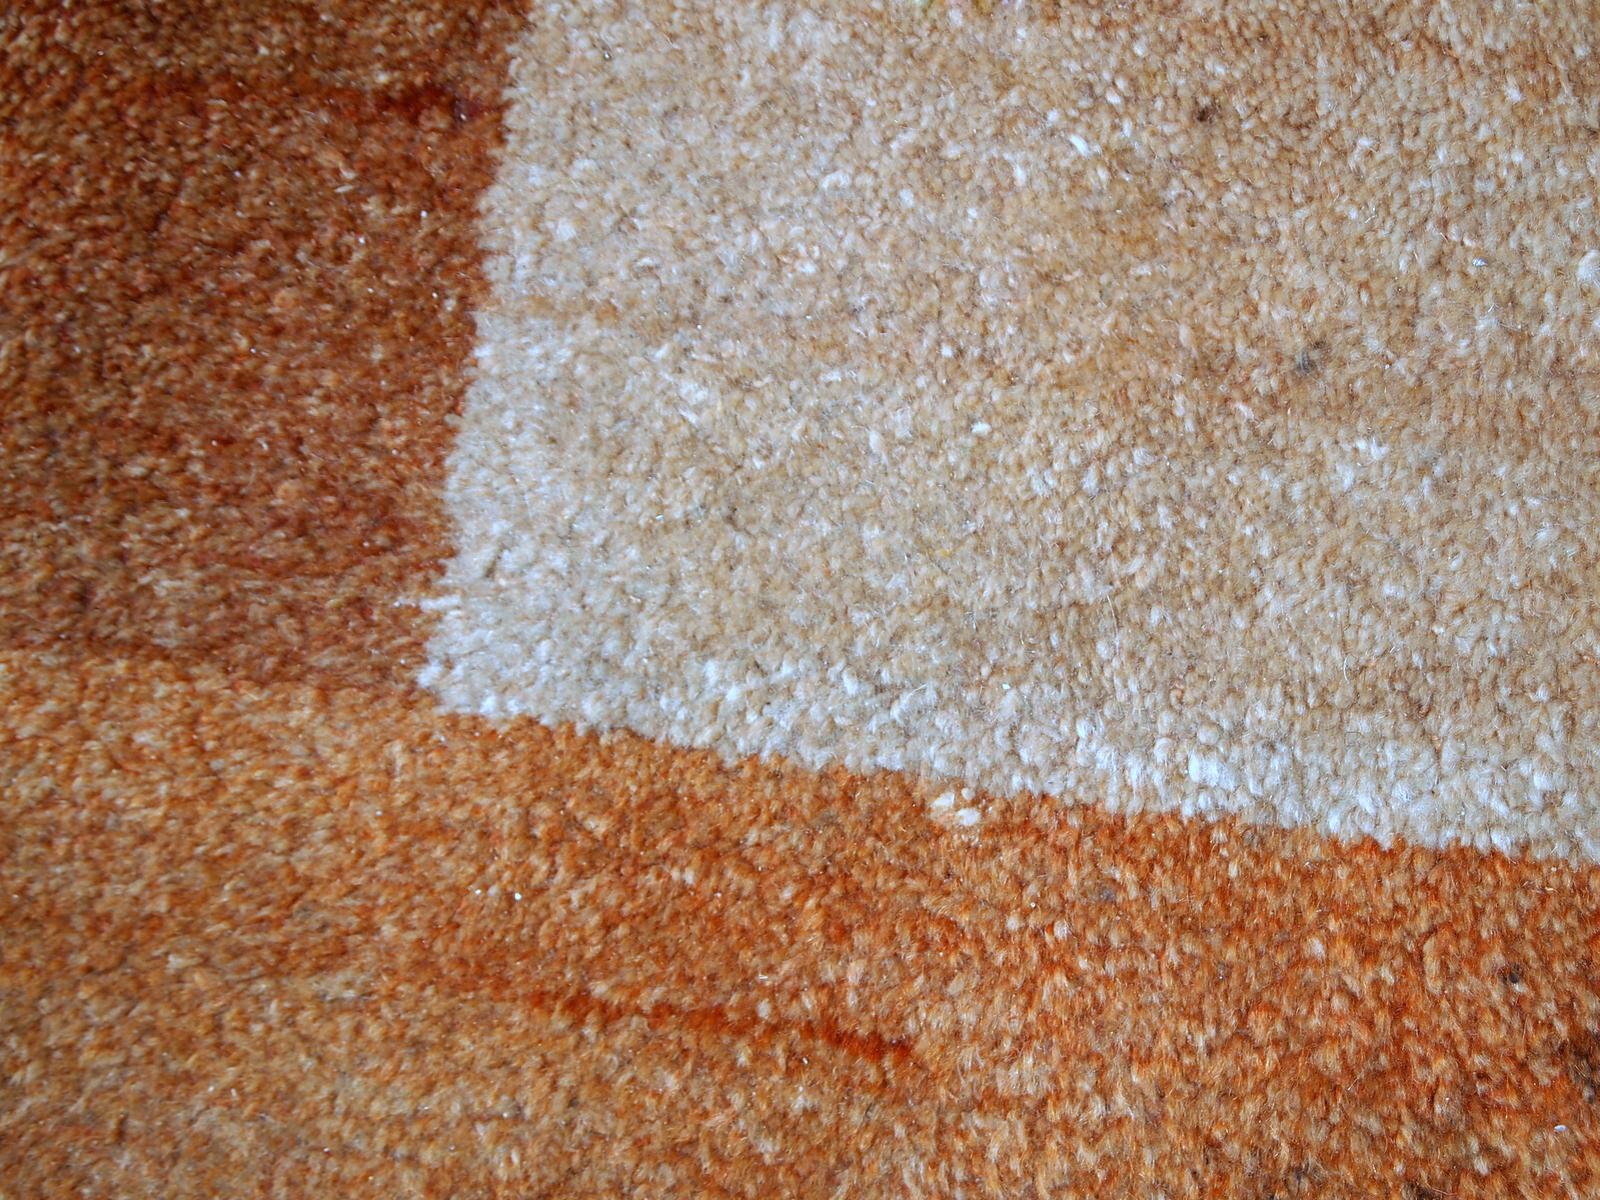 Vieux tapis persan Gabbeh en bon état d'origine. Il est en laine brunâtre, beige et rouge à motif géométrique, fabriqué à la fin du XXe siècle.

-état : original bon,

-vers les années 1980,

-taille : 6,5' x 9,8' (200cm x 300cm)